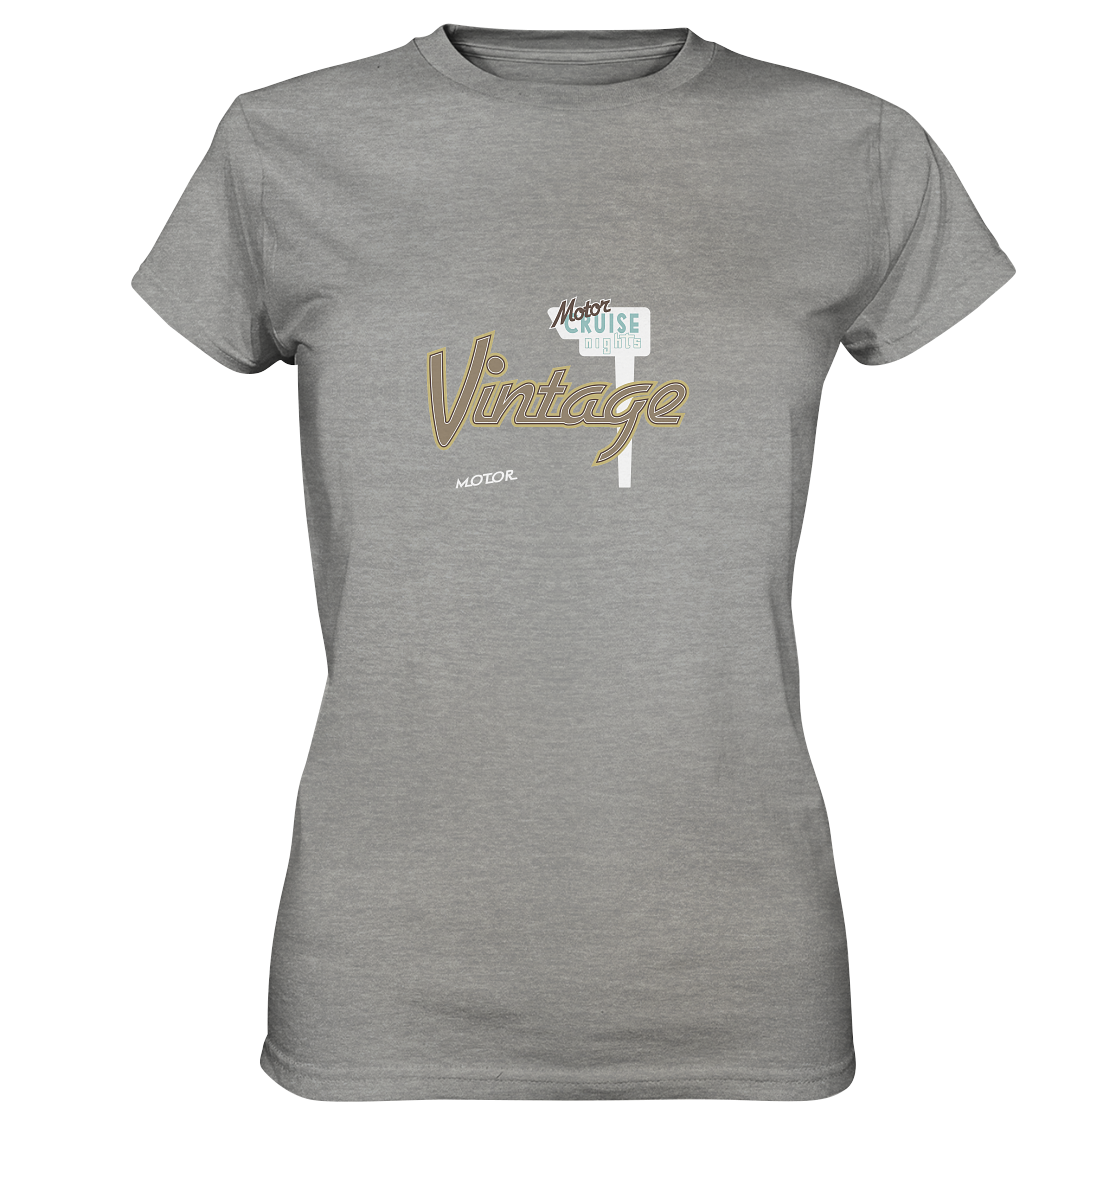 Motiv Vintage Motorcruise - Ladies Premium Shirt - verschiedene Farben